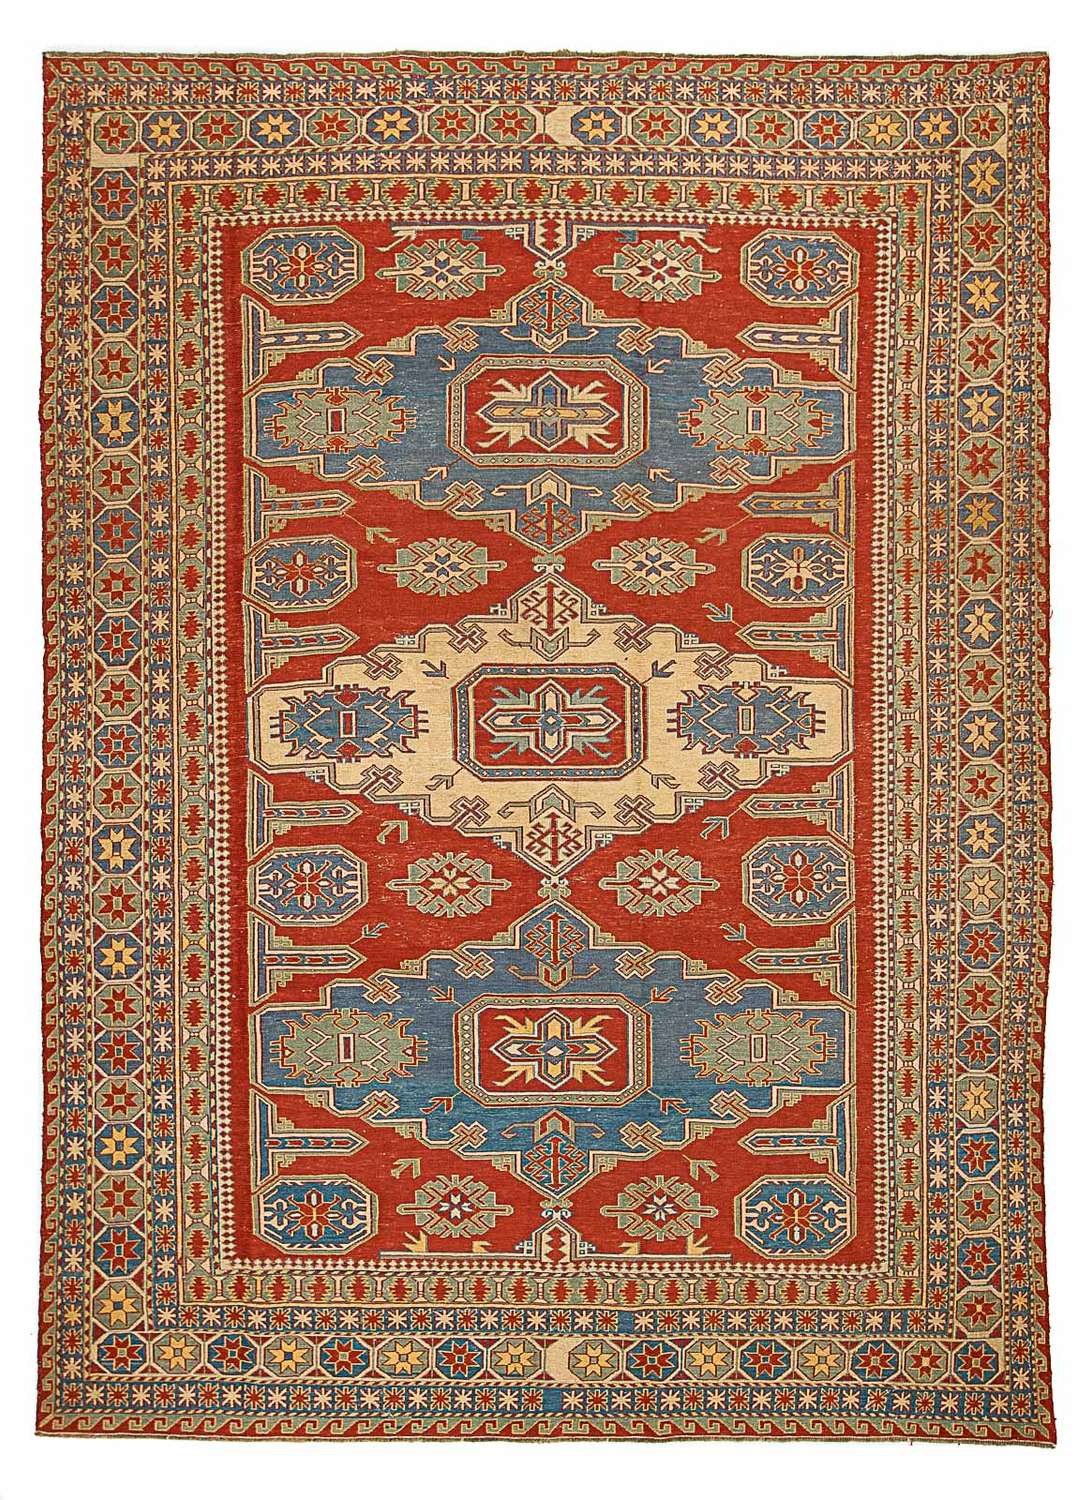 Kelimský koberec - Orientální - 265 x 200 cm - tmavě červená